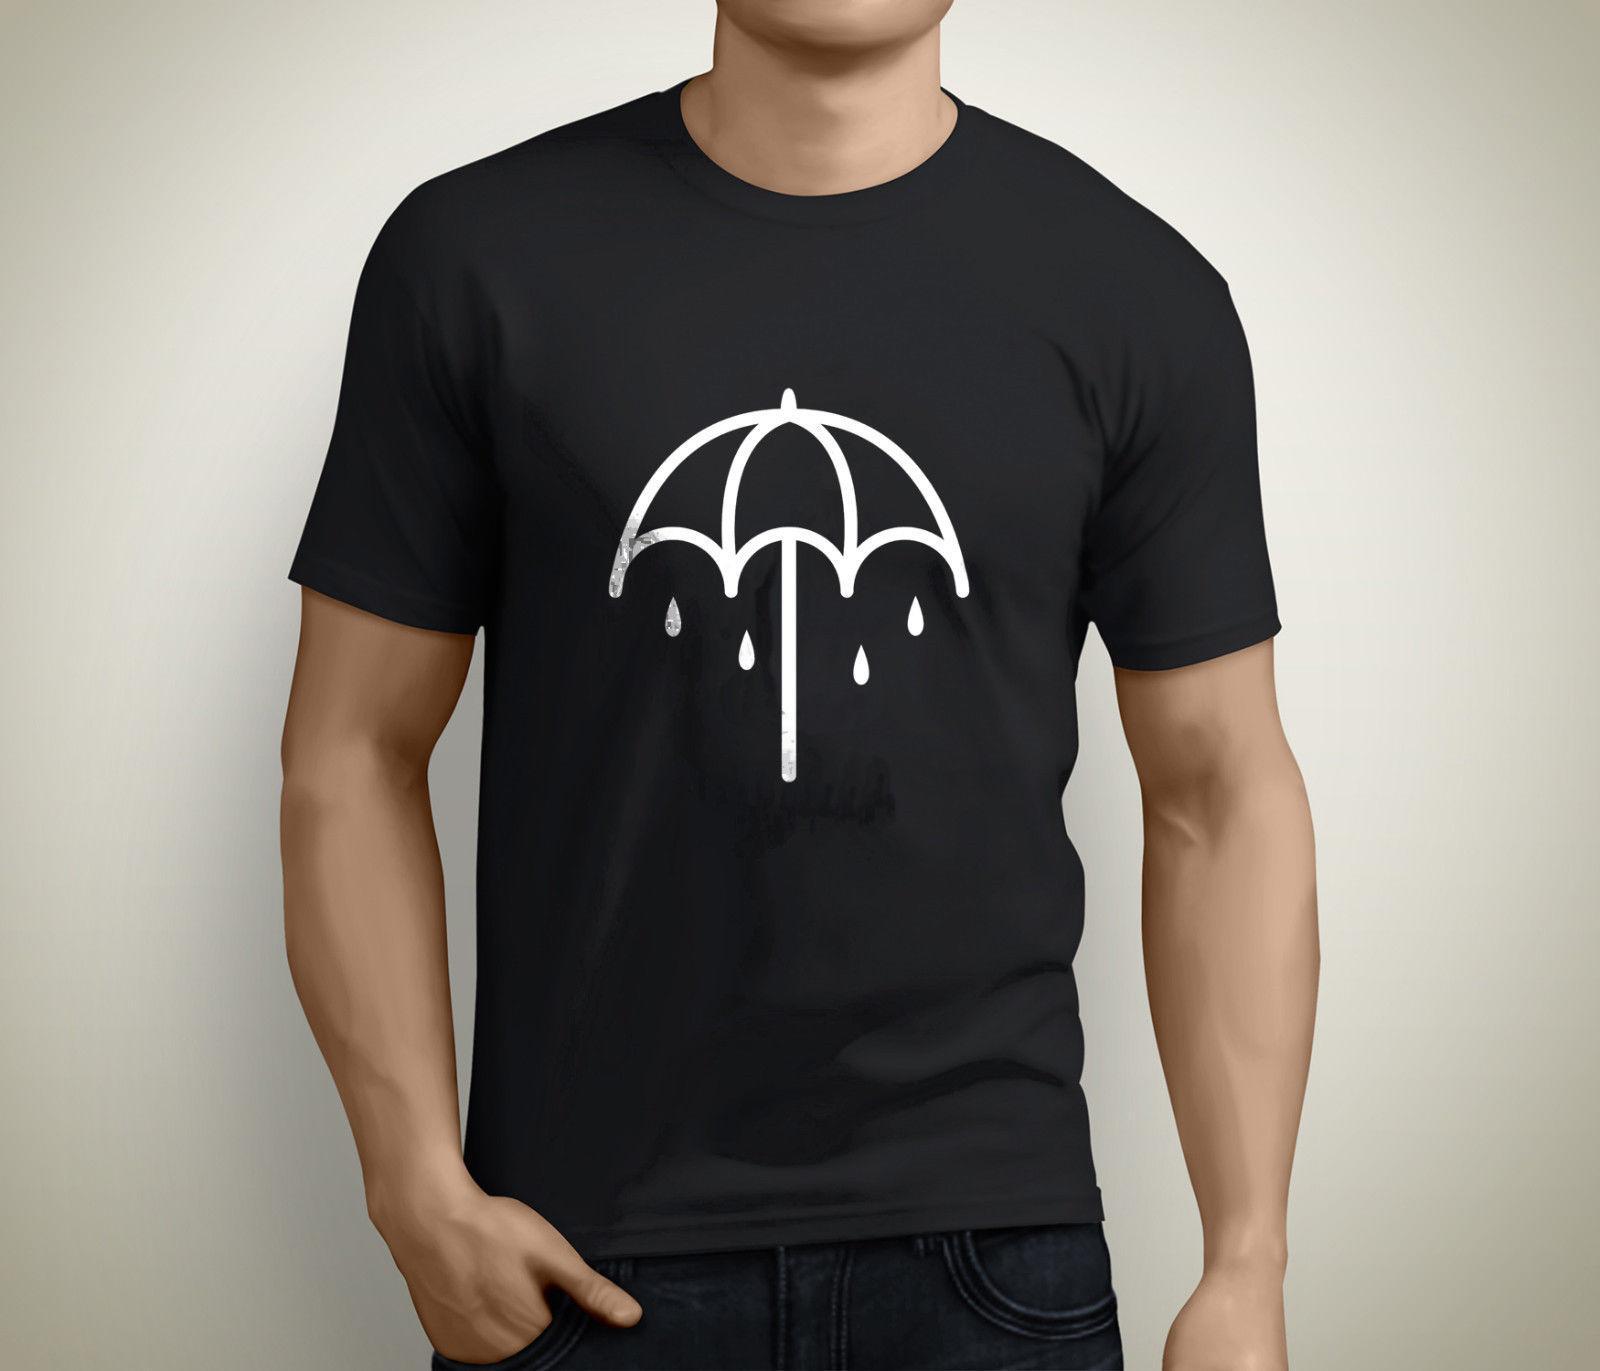 T Umbrella Logo - Bring Me The Horizon Umbrella Logo Men'S Black T Shirt Custom Jersey ...